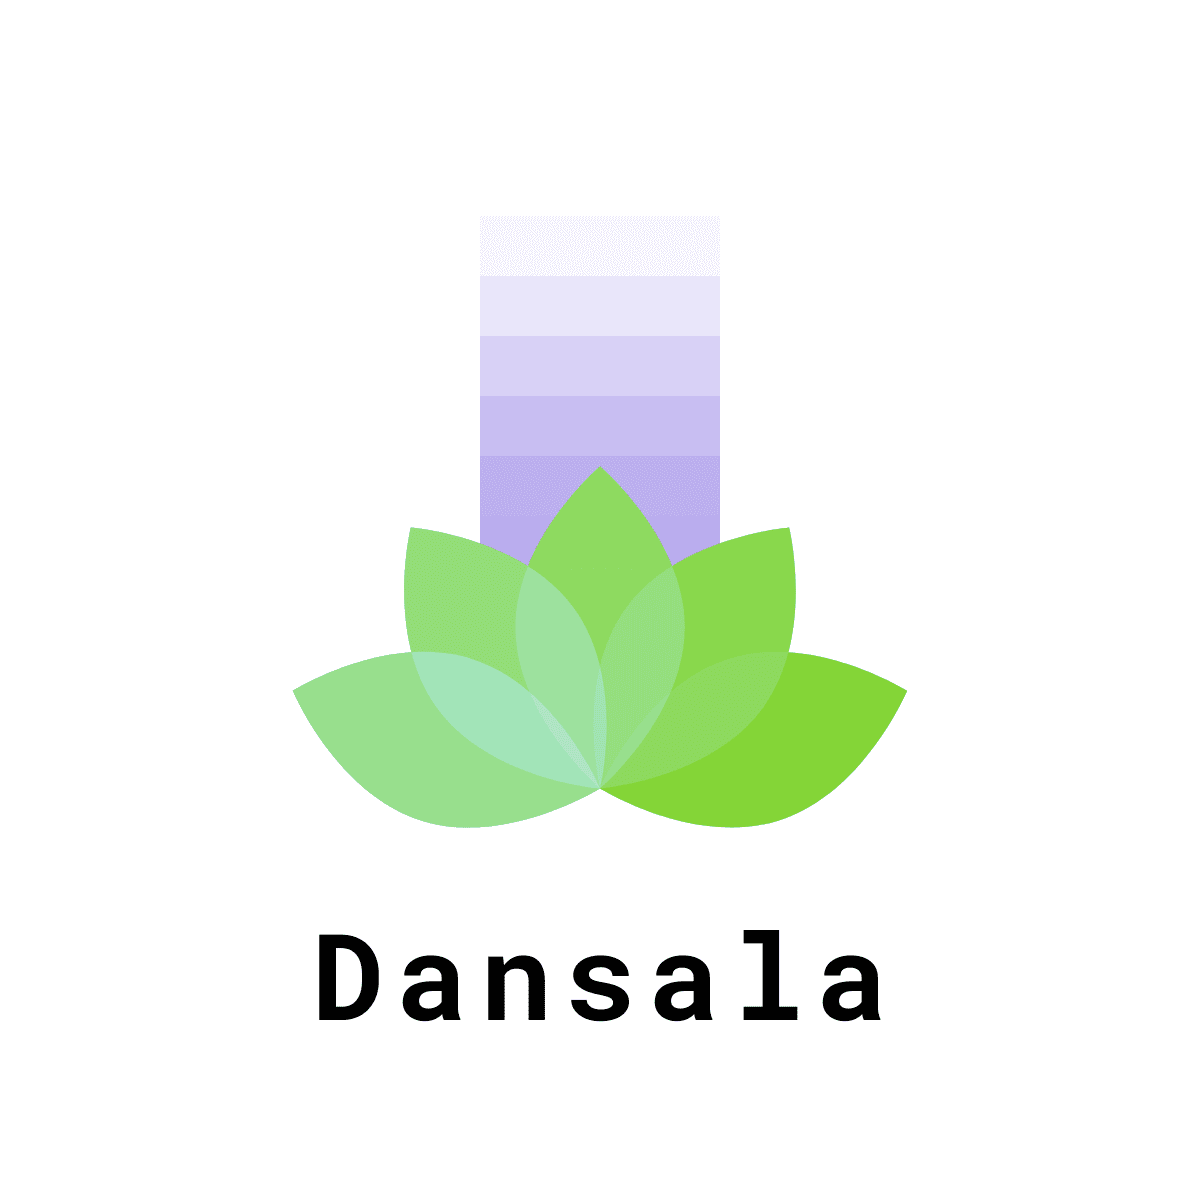 Project Dansala Logo